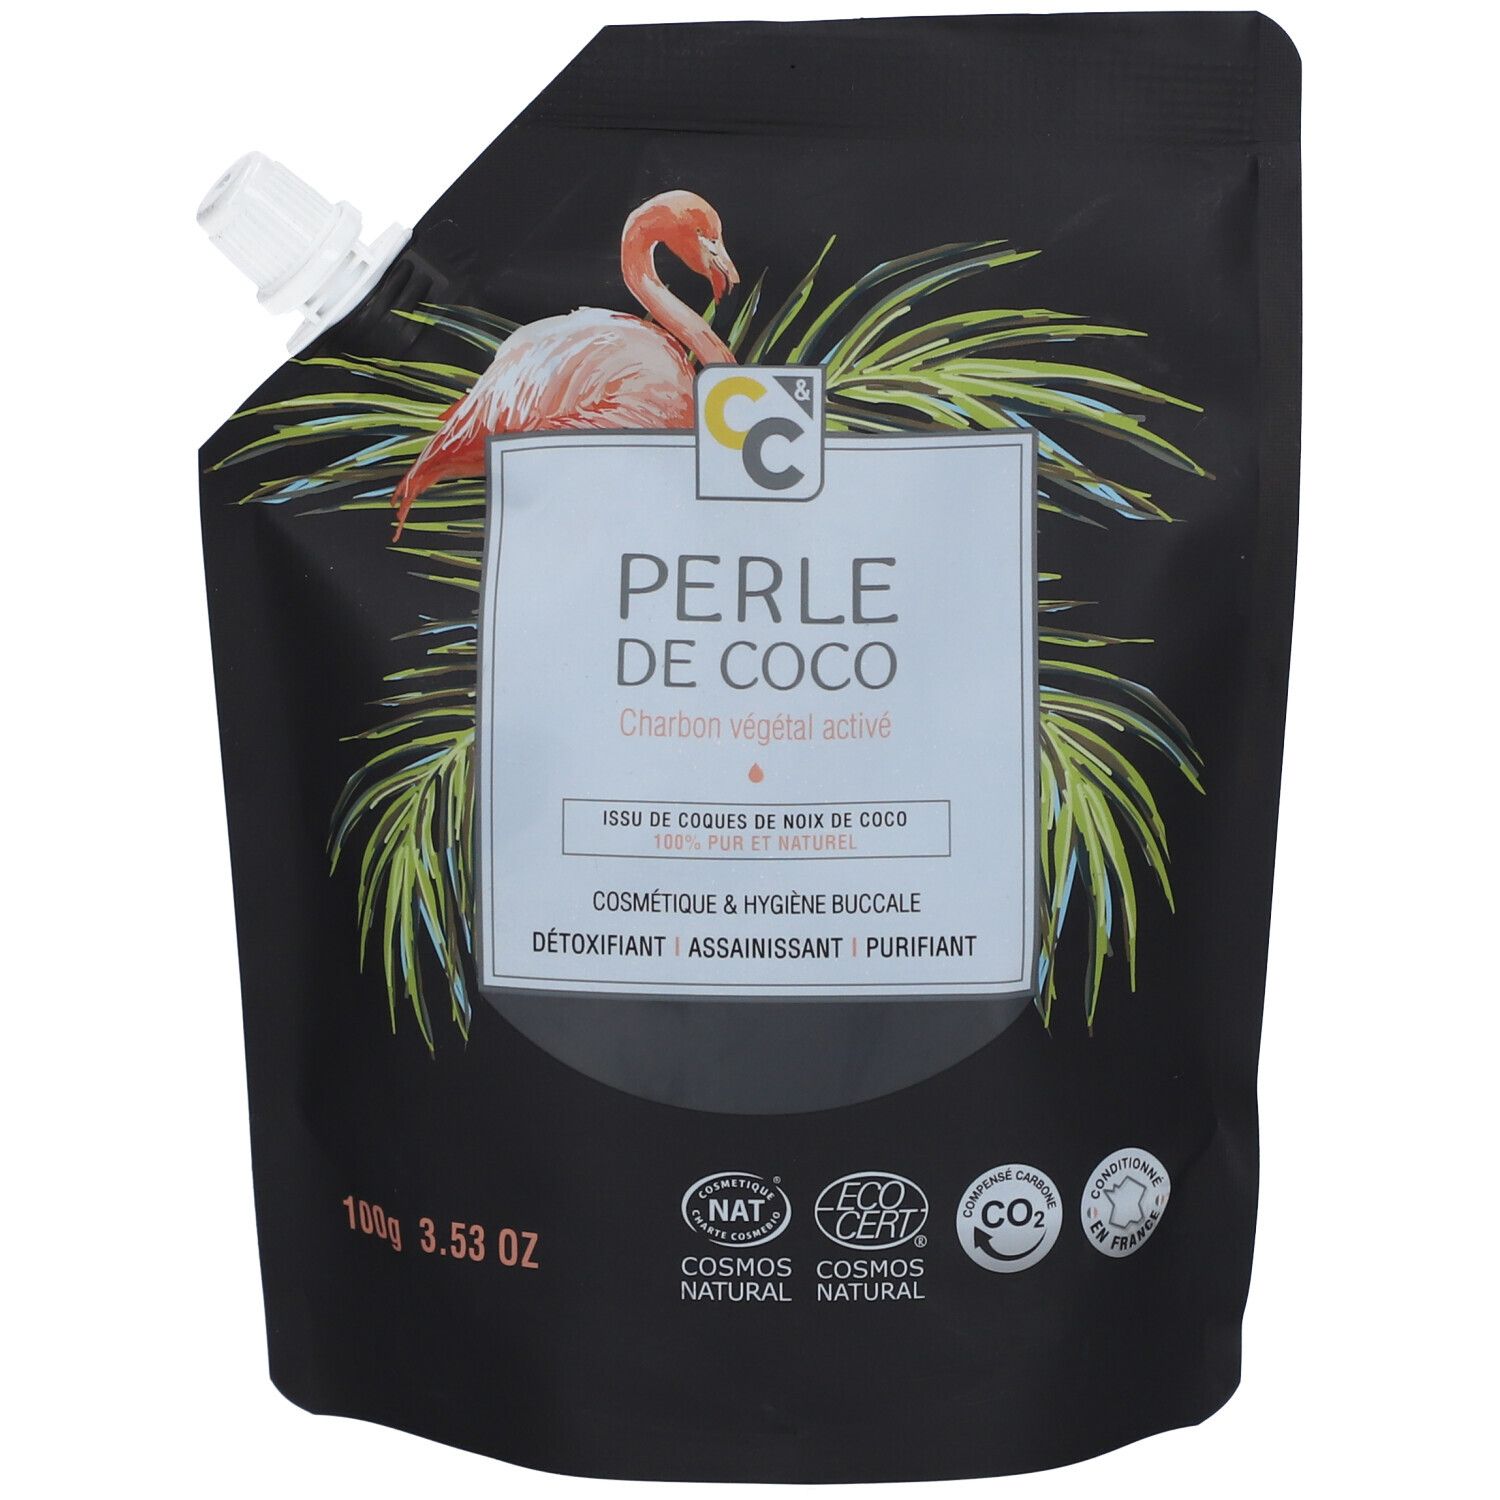 Comptoirs & Compagnies Perle de Coco Charbon végétal activé